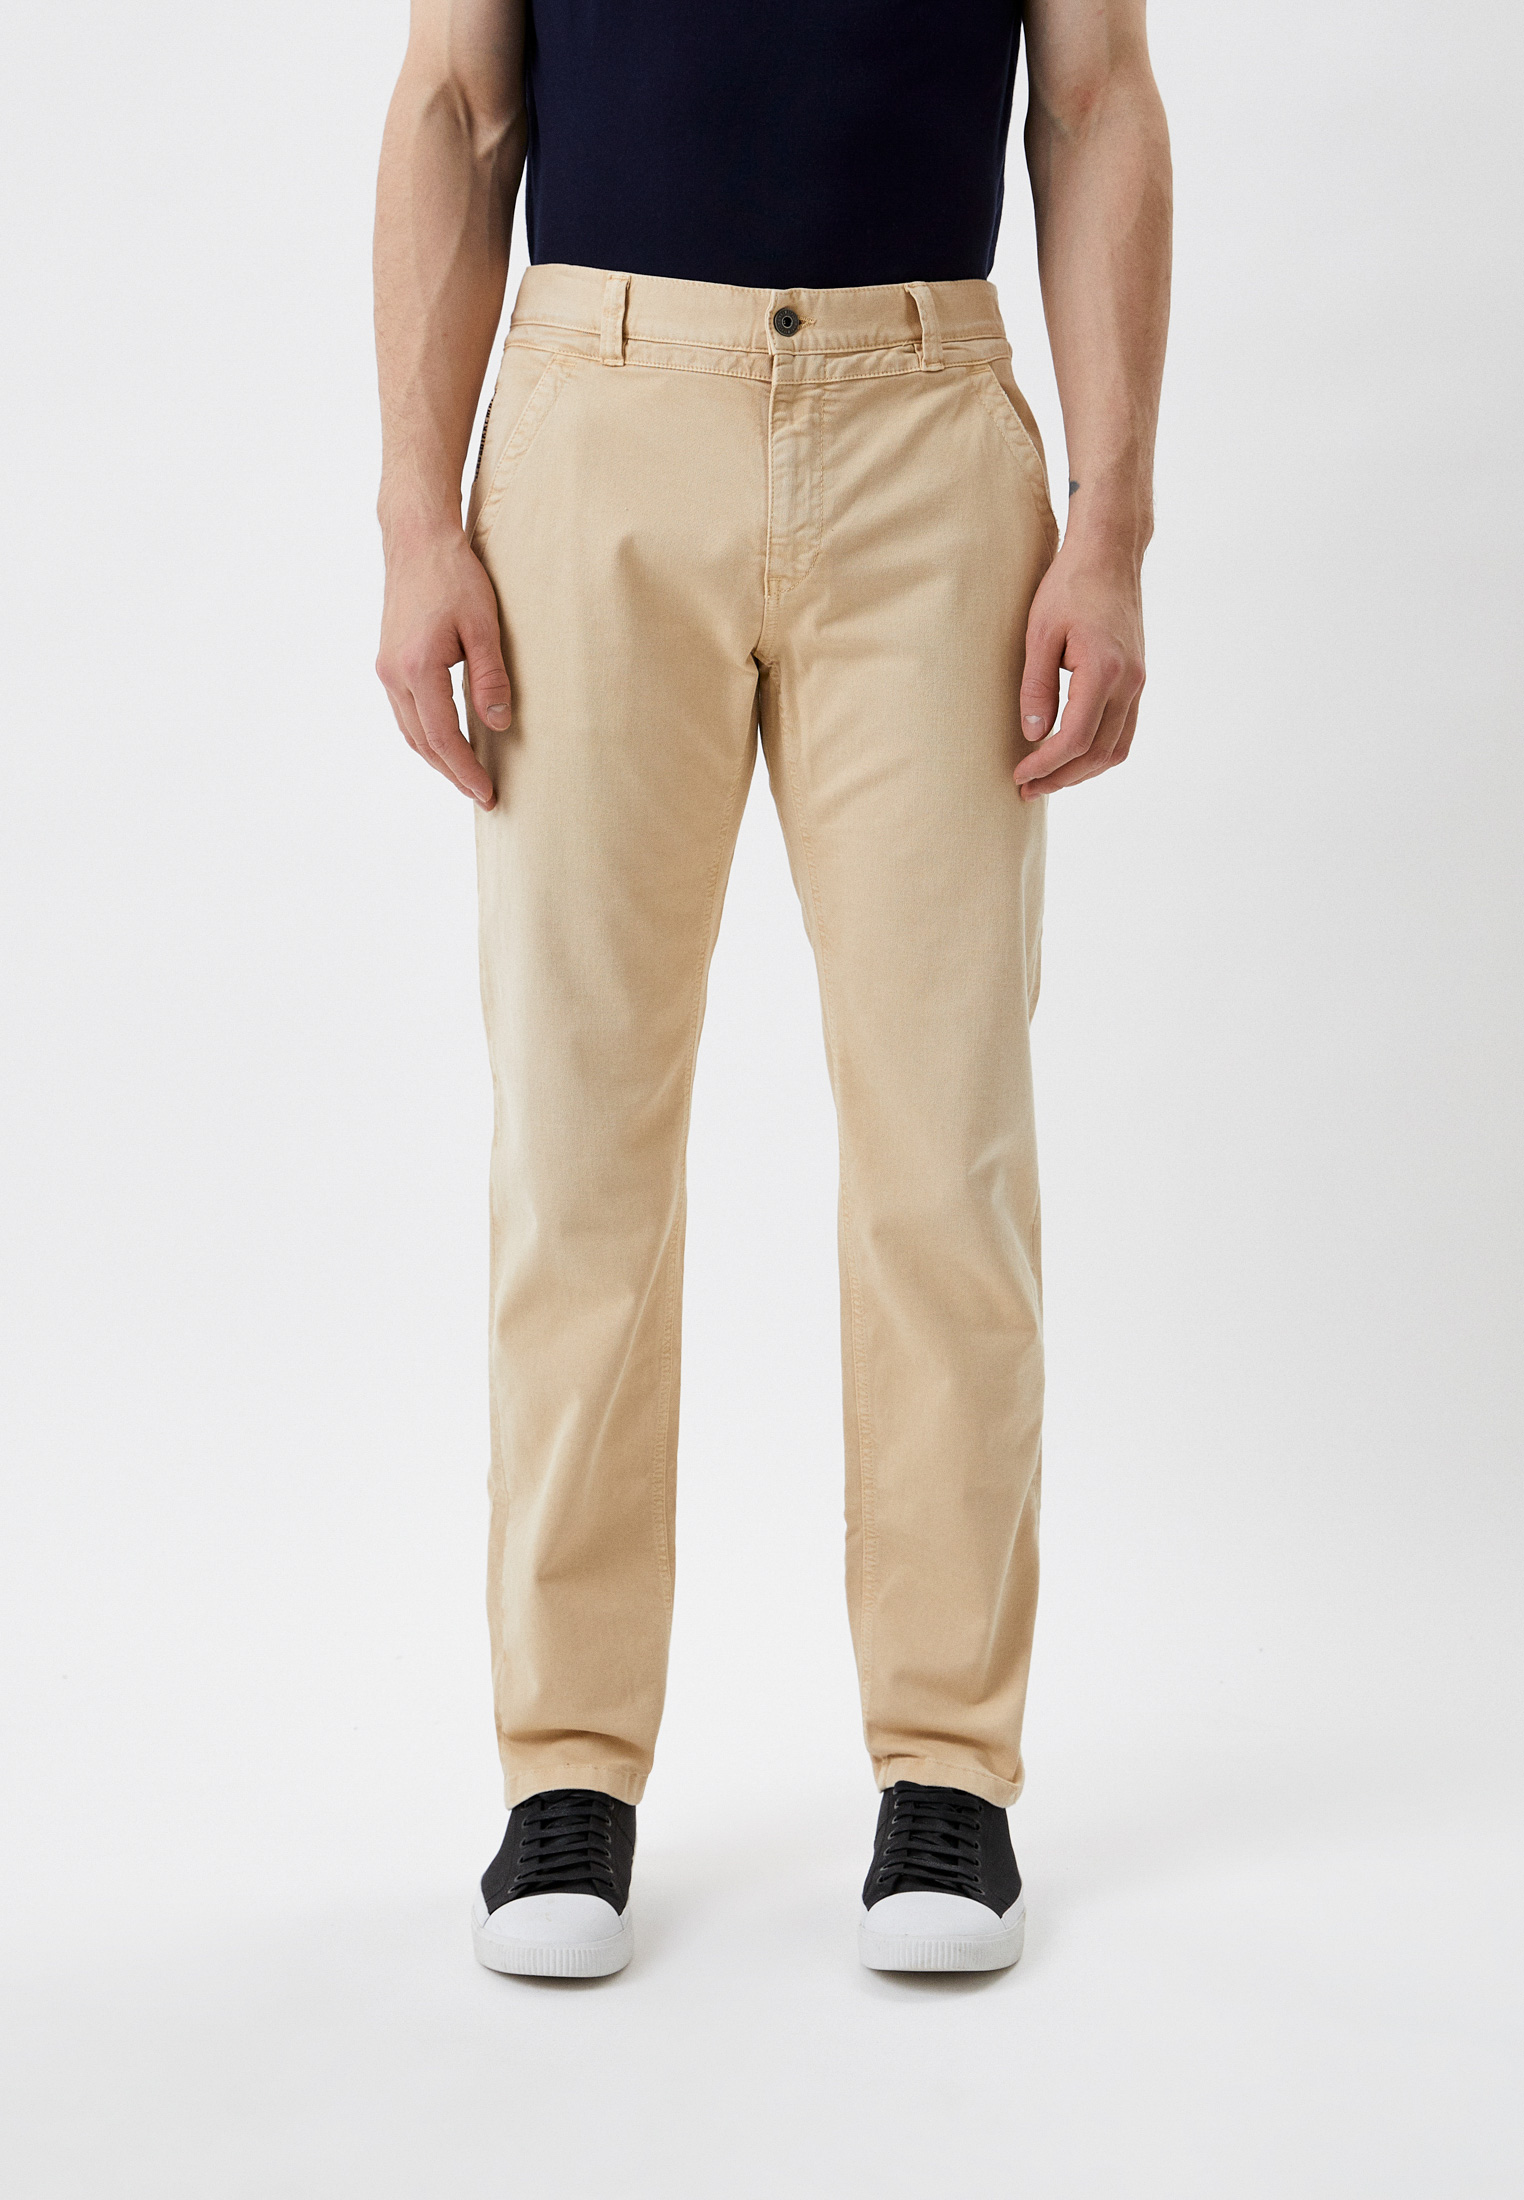 Мужские повседневные брюки Bikkembergs (Биккембергс) CP11100S3394: изображение 1